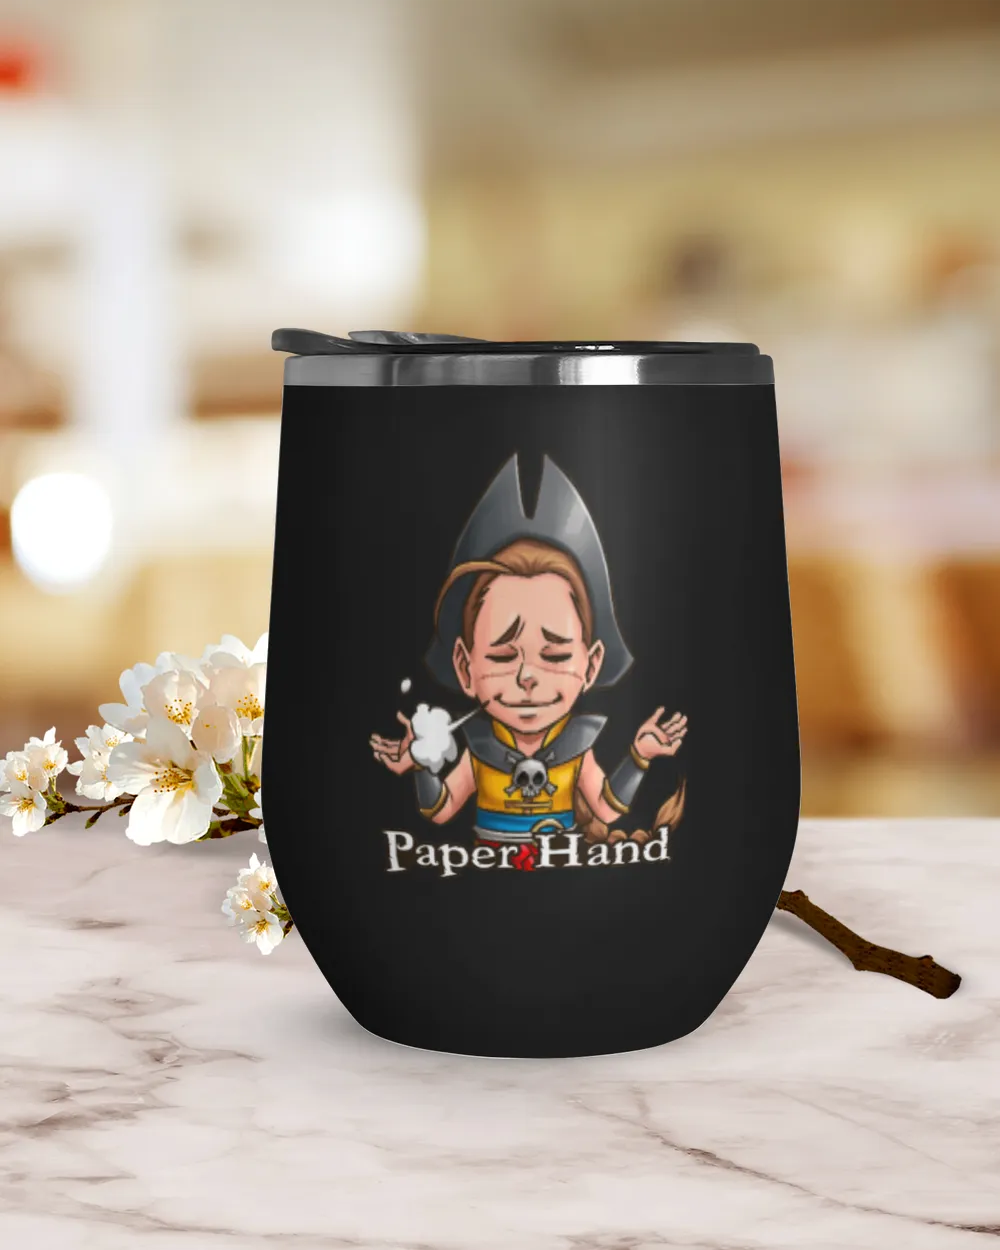 Papar hand ! crypto cup,